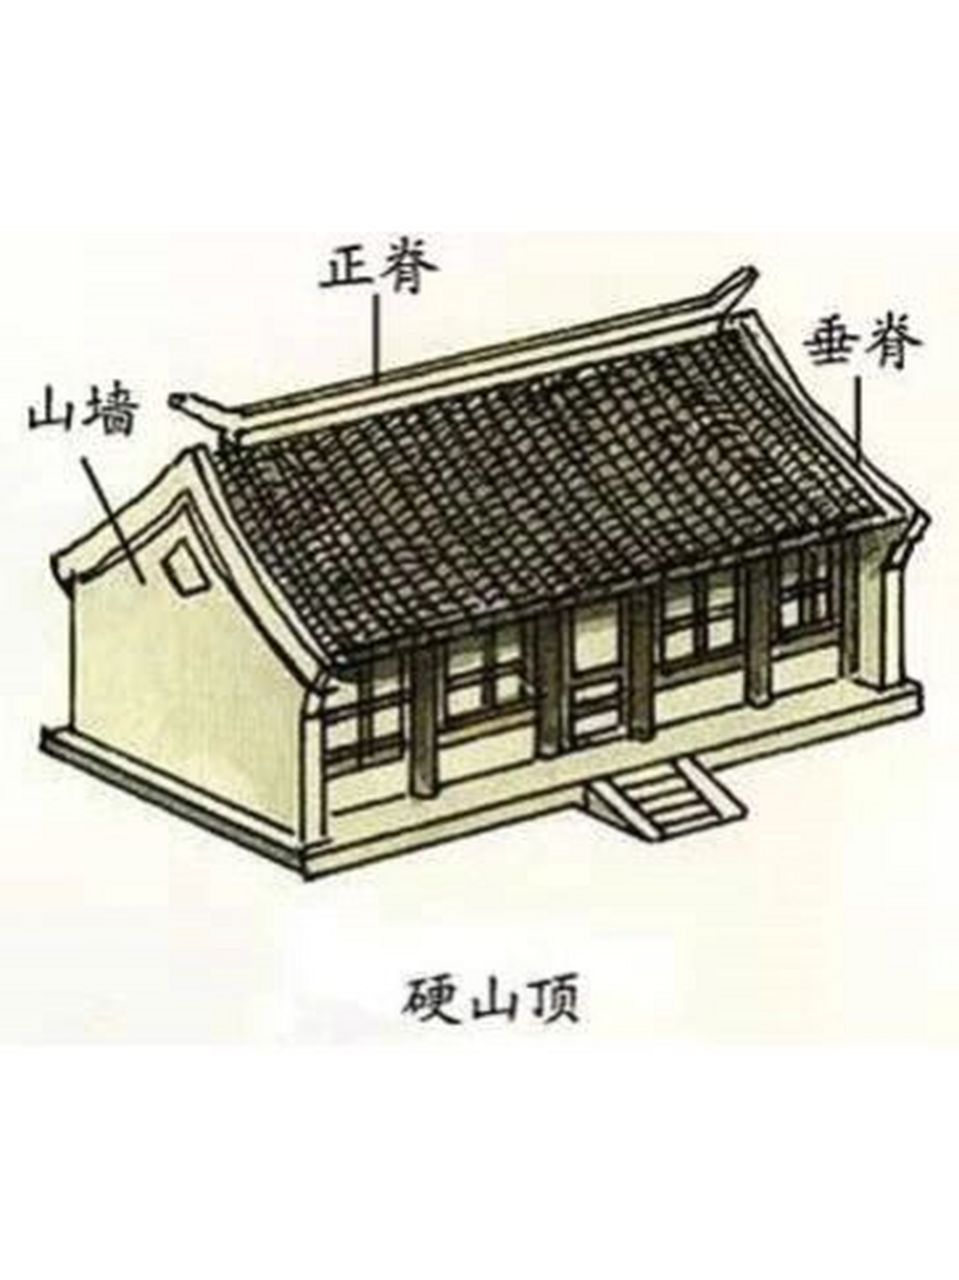 中国古建筑屋顶——硬山顶 16615硬山顶:硬山式屋顶有一条正脊和